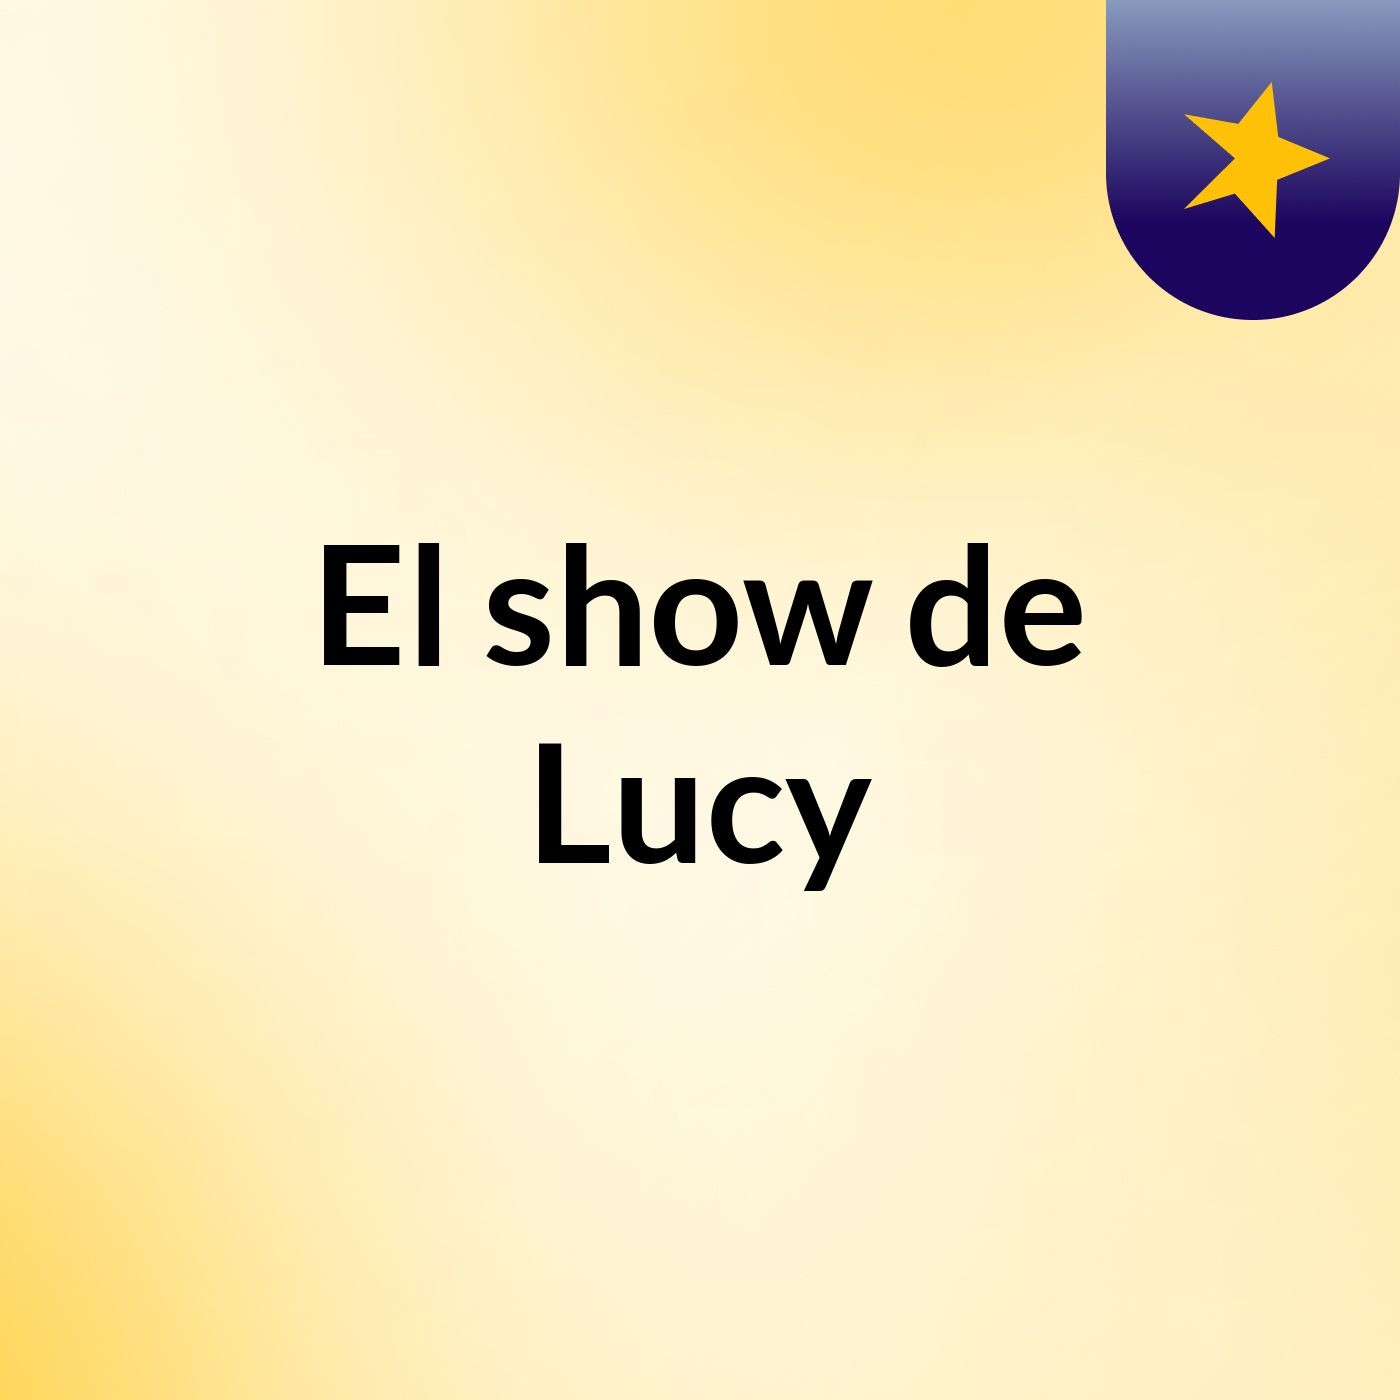 El show de Lucy